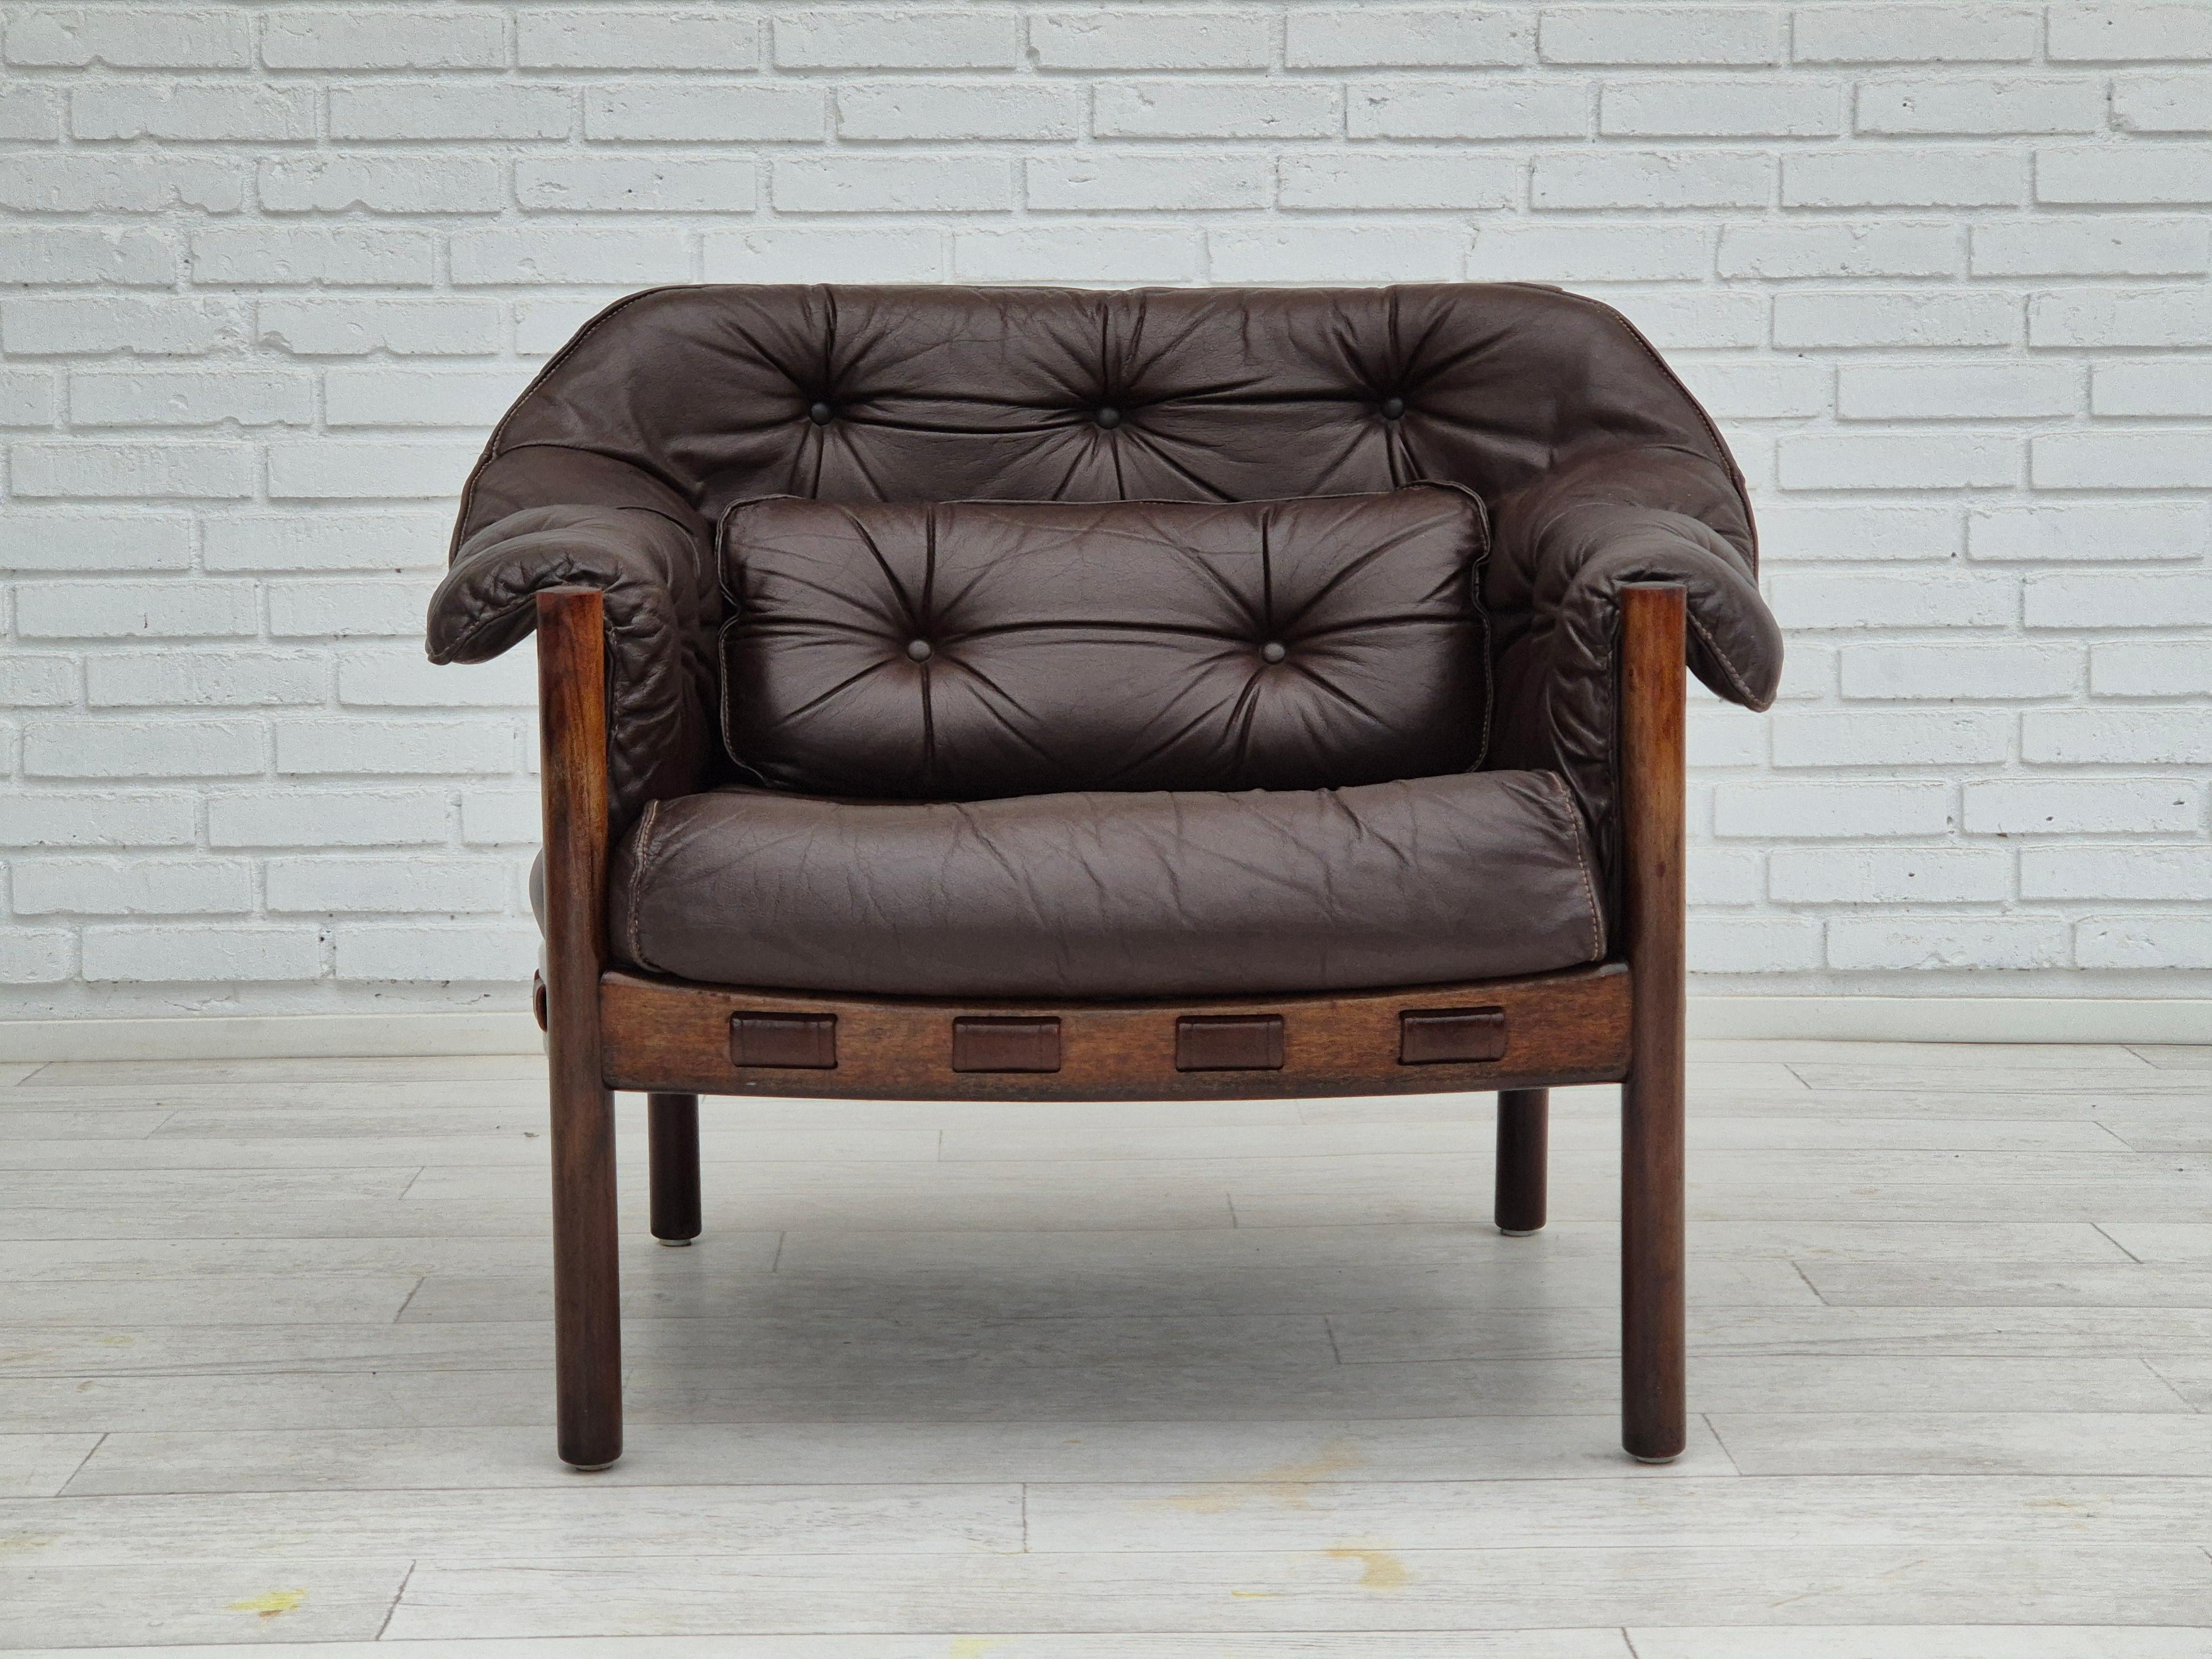 Années 1970, design scandinave par Arne Norells. Chaise longue en très bon état d'origine : pas d'odeur ni de tache. Cuir brun d'origine, bois de hêtre. Fabriqué par un fabricant de meubles suédois vers les années 1970.